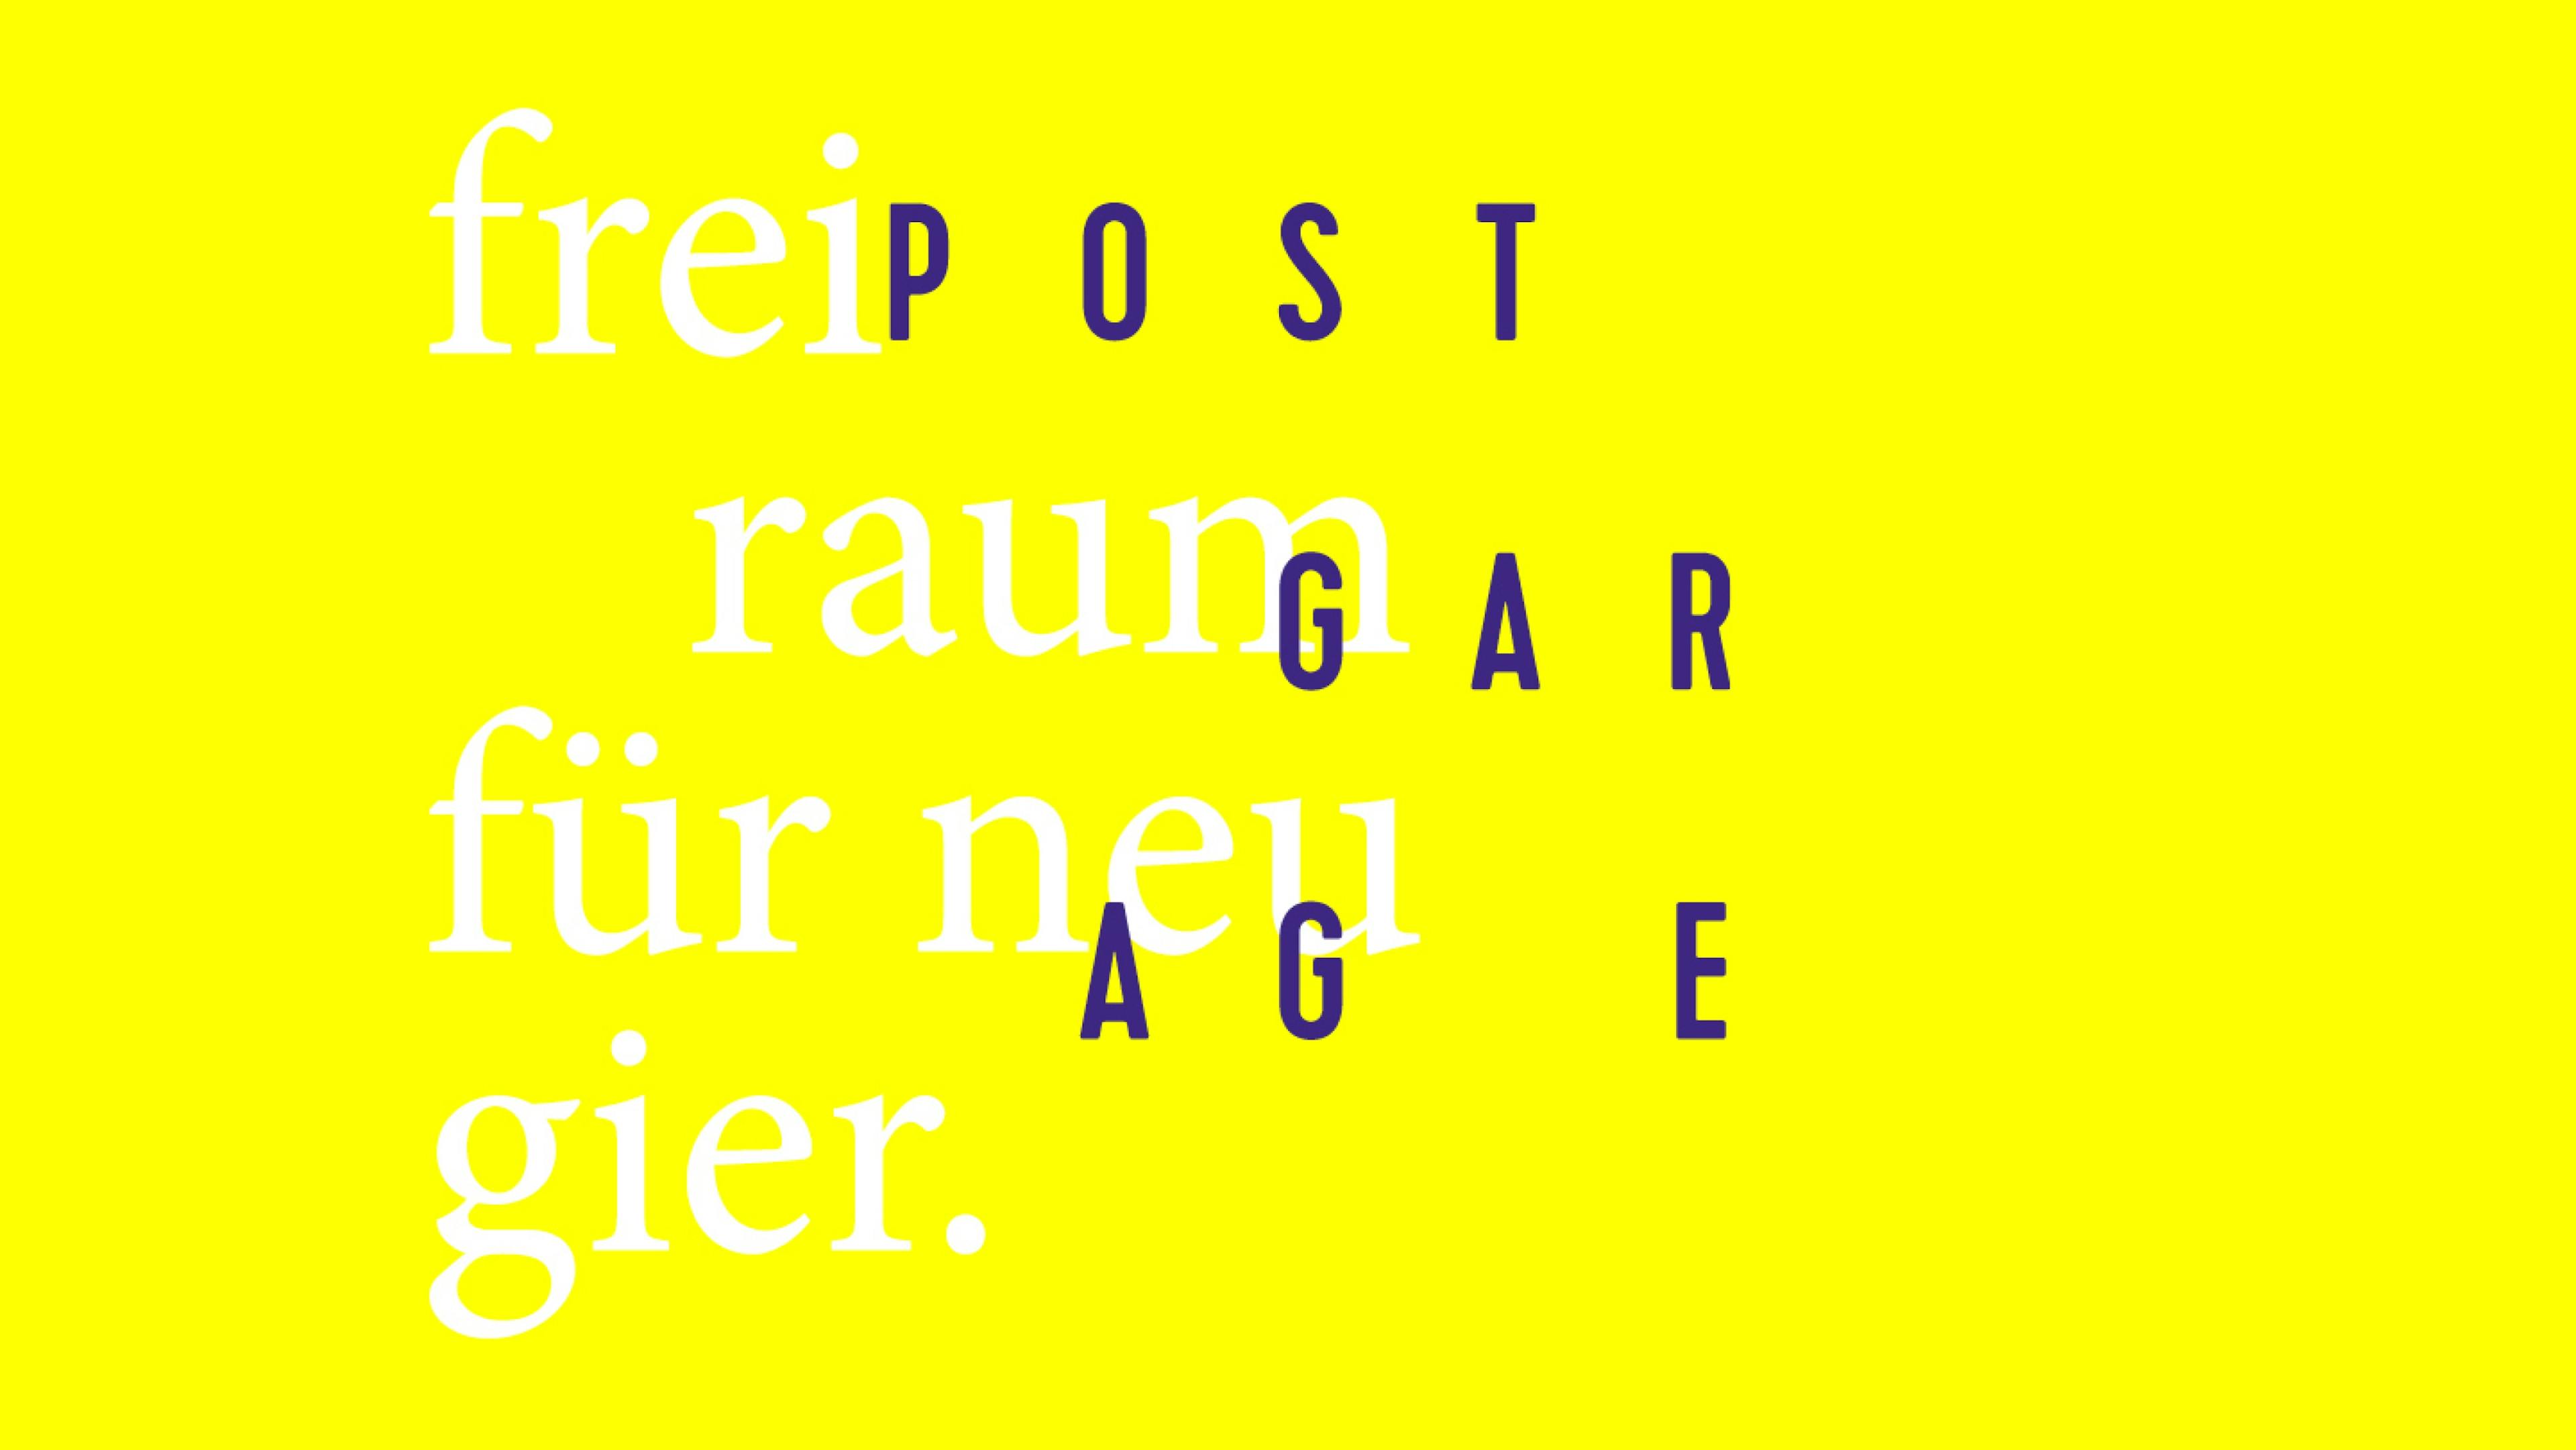 Gelbe Farbfläche mit Postgarage Logo und Claim Freiraum für Neugier © gm gobiq